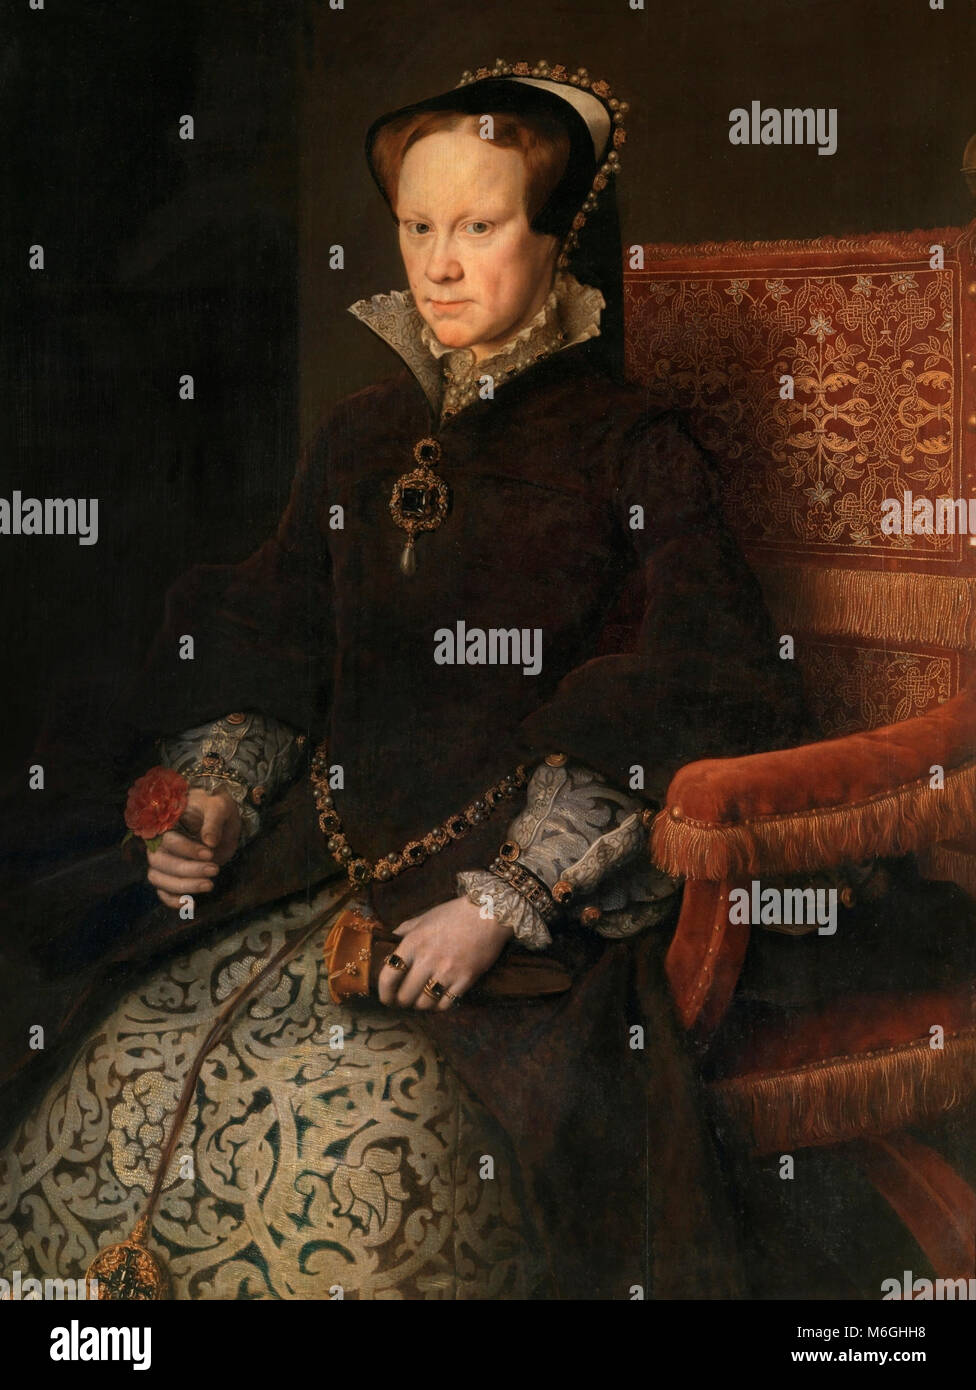 Portrait von Königin Maria I. von England (1516-1558), besser als Maria Tudor, die Tochter von König Heinrich VIII. von England und Königin Katharina von Aragon und Königin von Spanien für ihre Ehe mit Philipp II., Sohn von Kaiser Karl I. von Spanien bekannt. Antonis Mor, 1554 Stockfoto